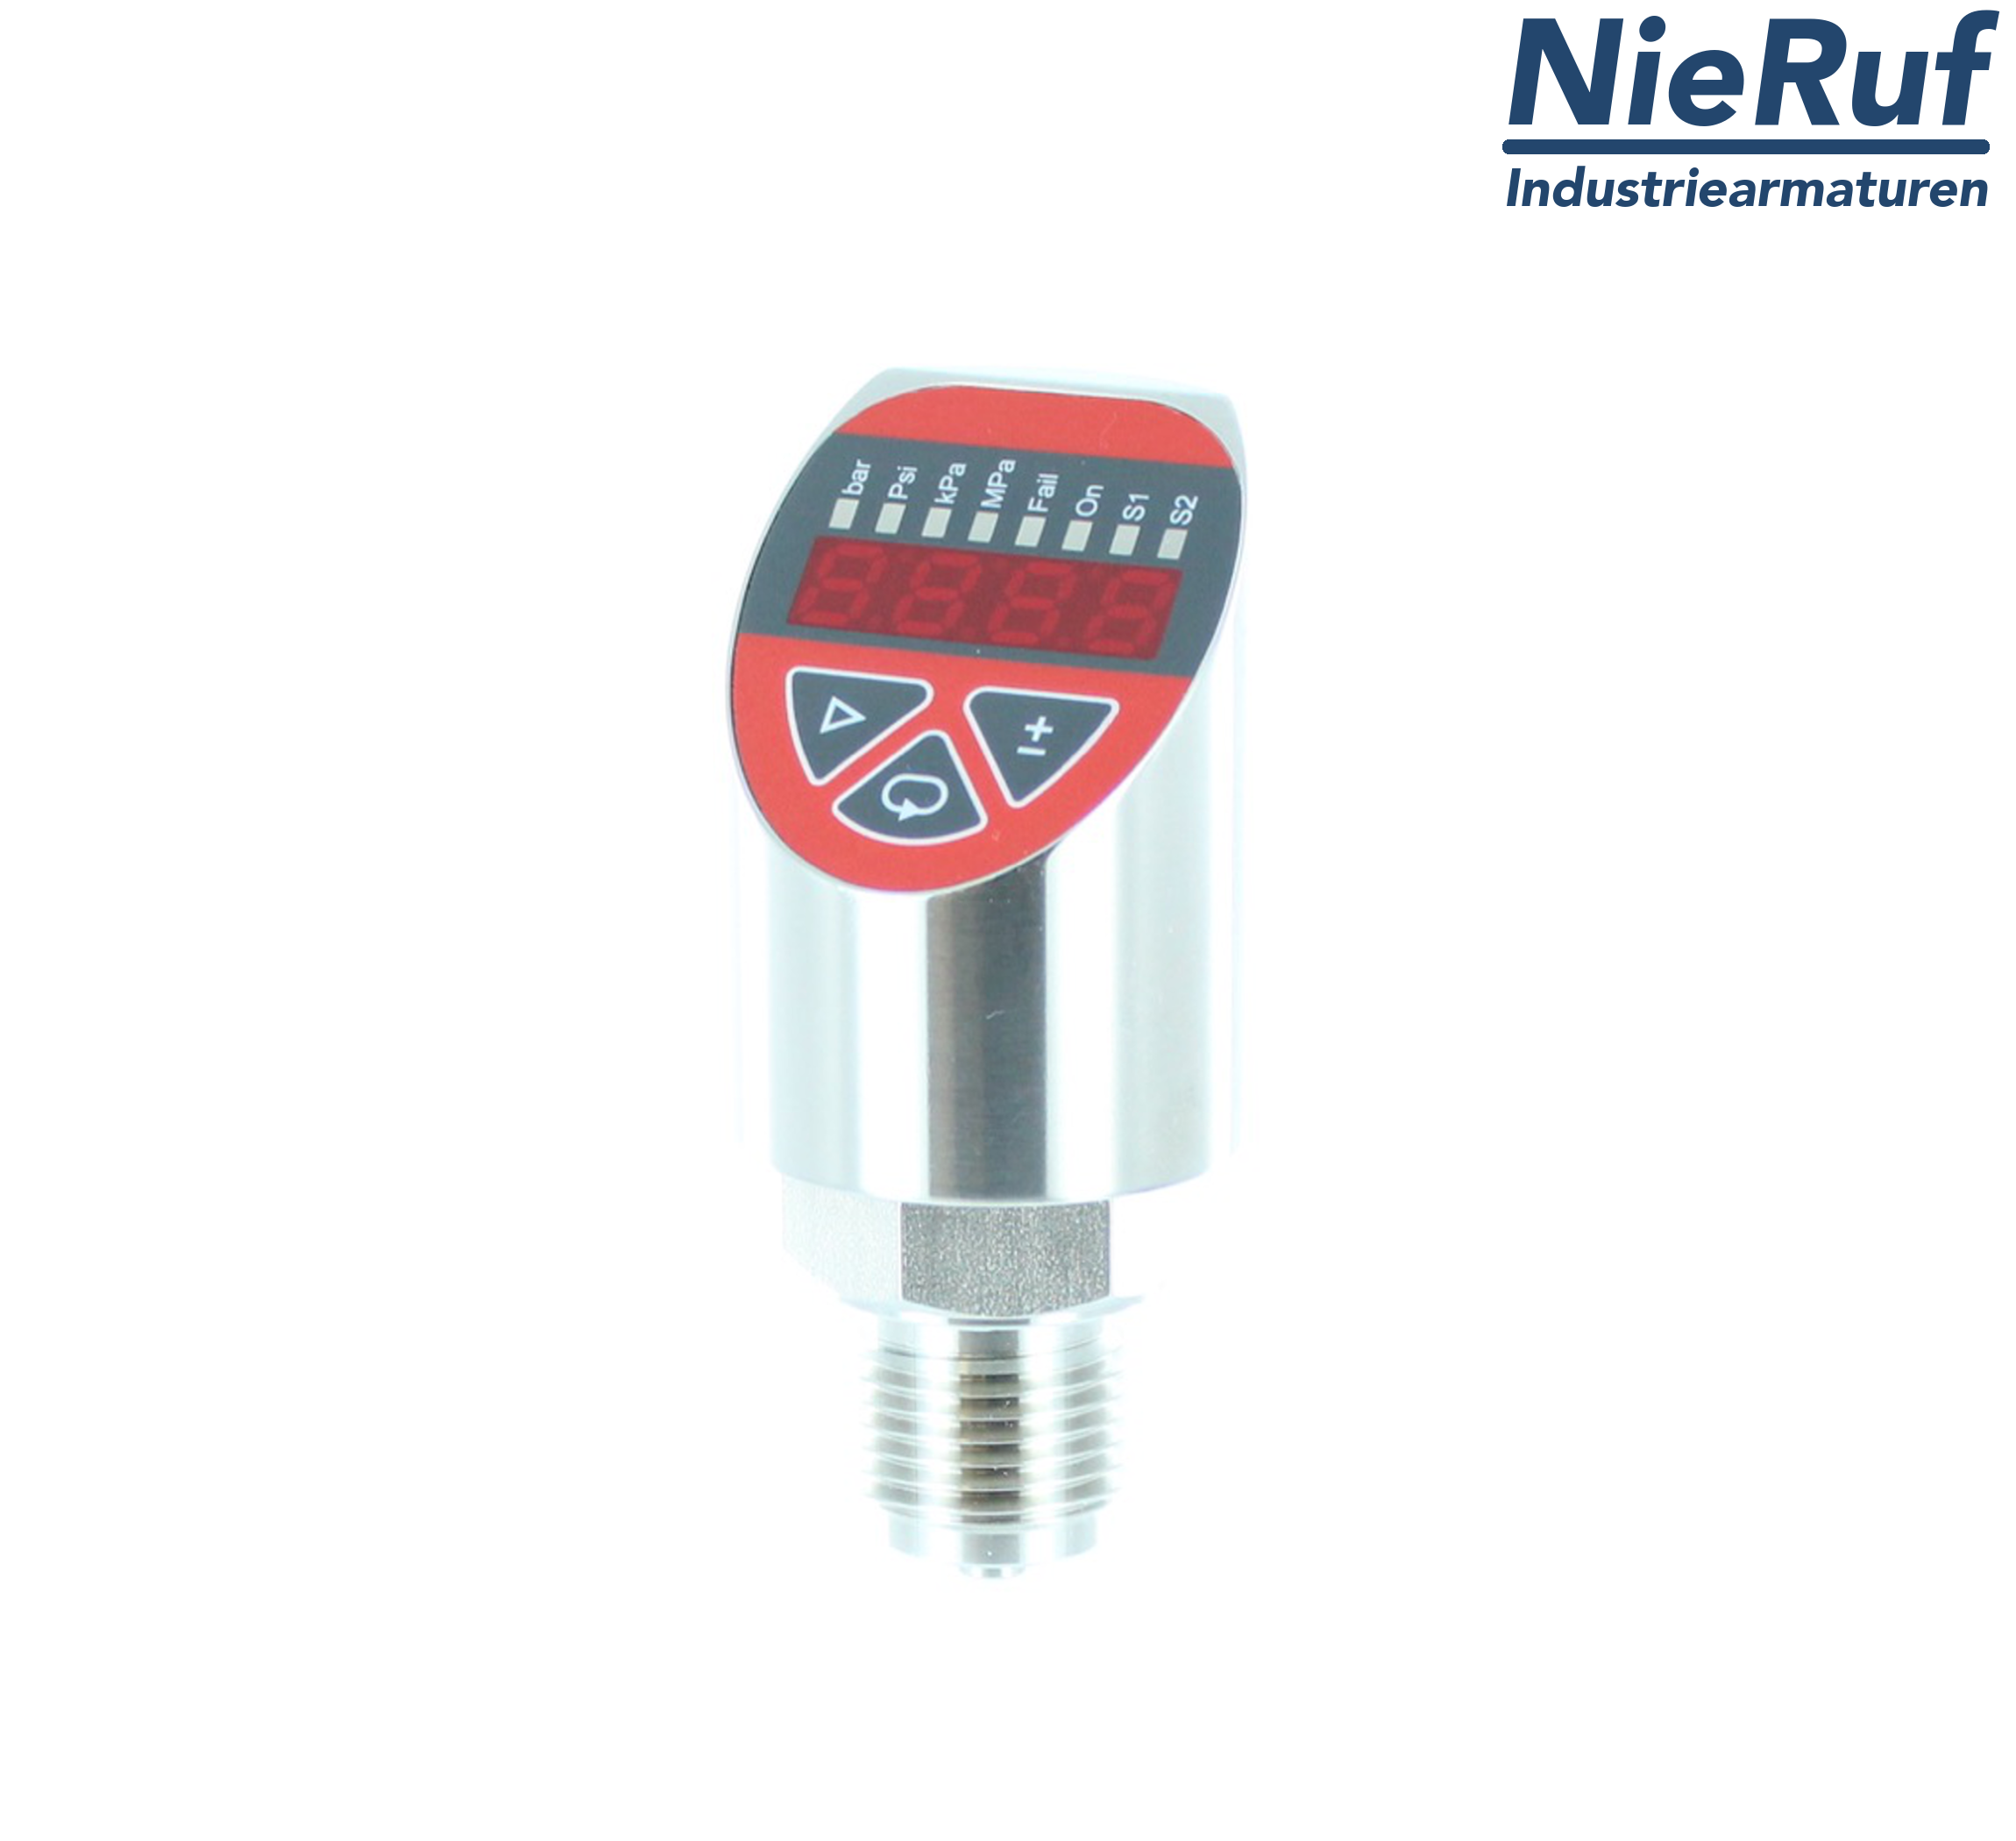 digital pressure sensor G 1/2" B IB 4-wire: 1xPNP, 1x4 - 20mA FPM 0,0 - 250,0 bar